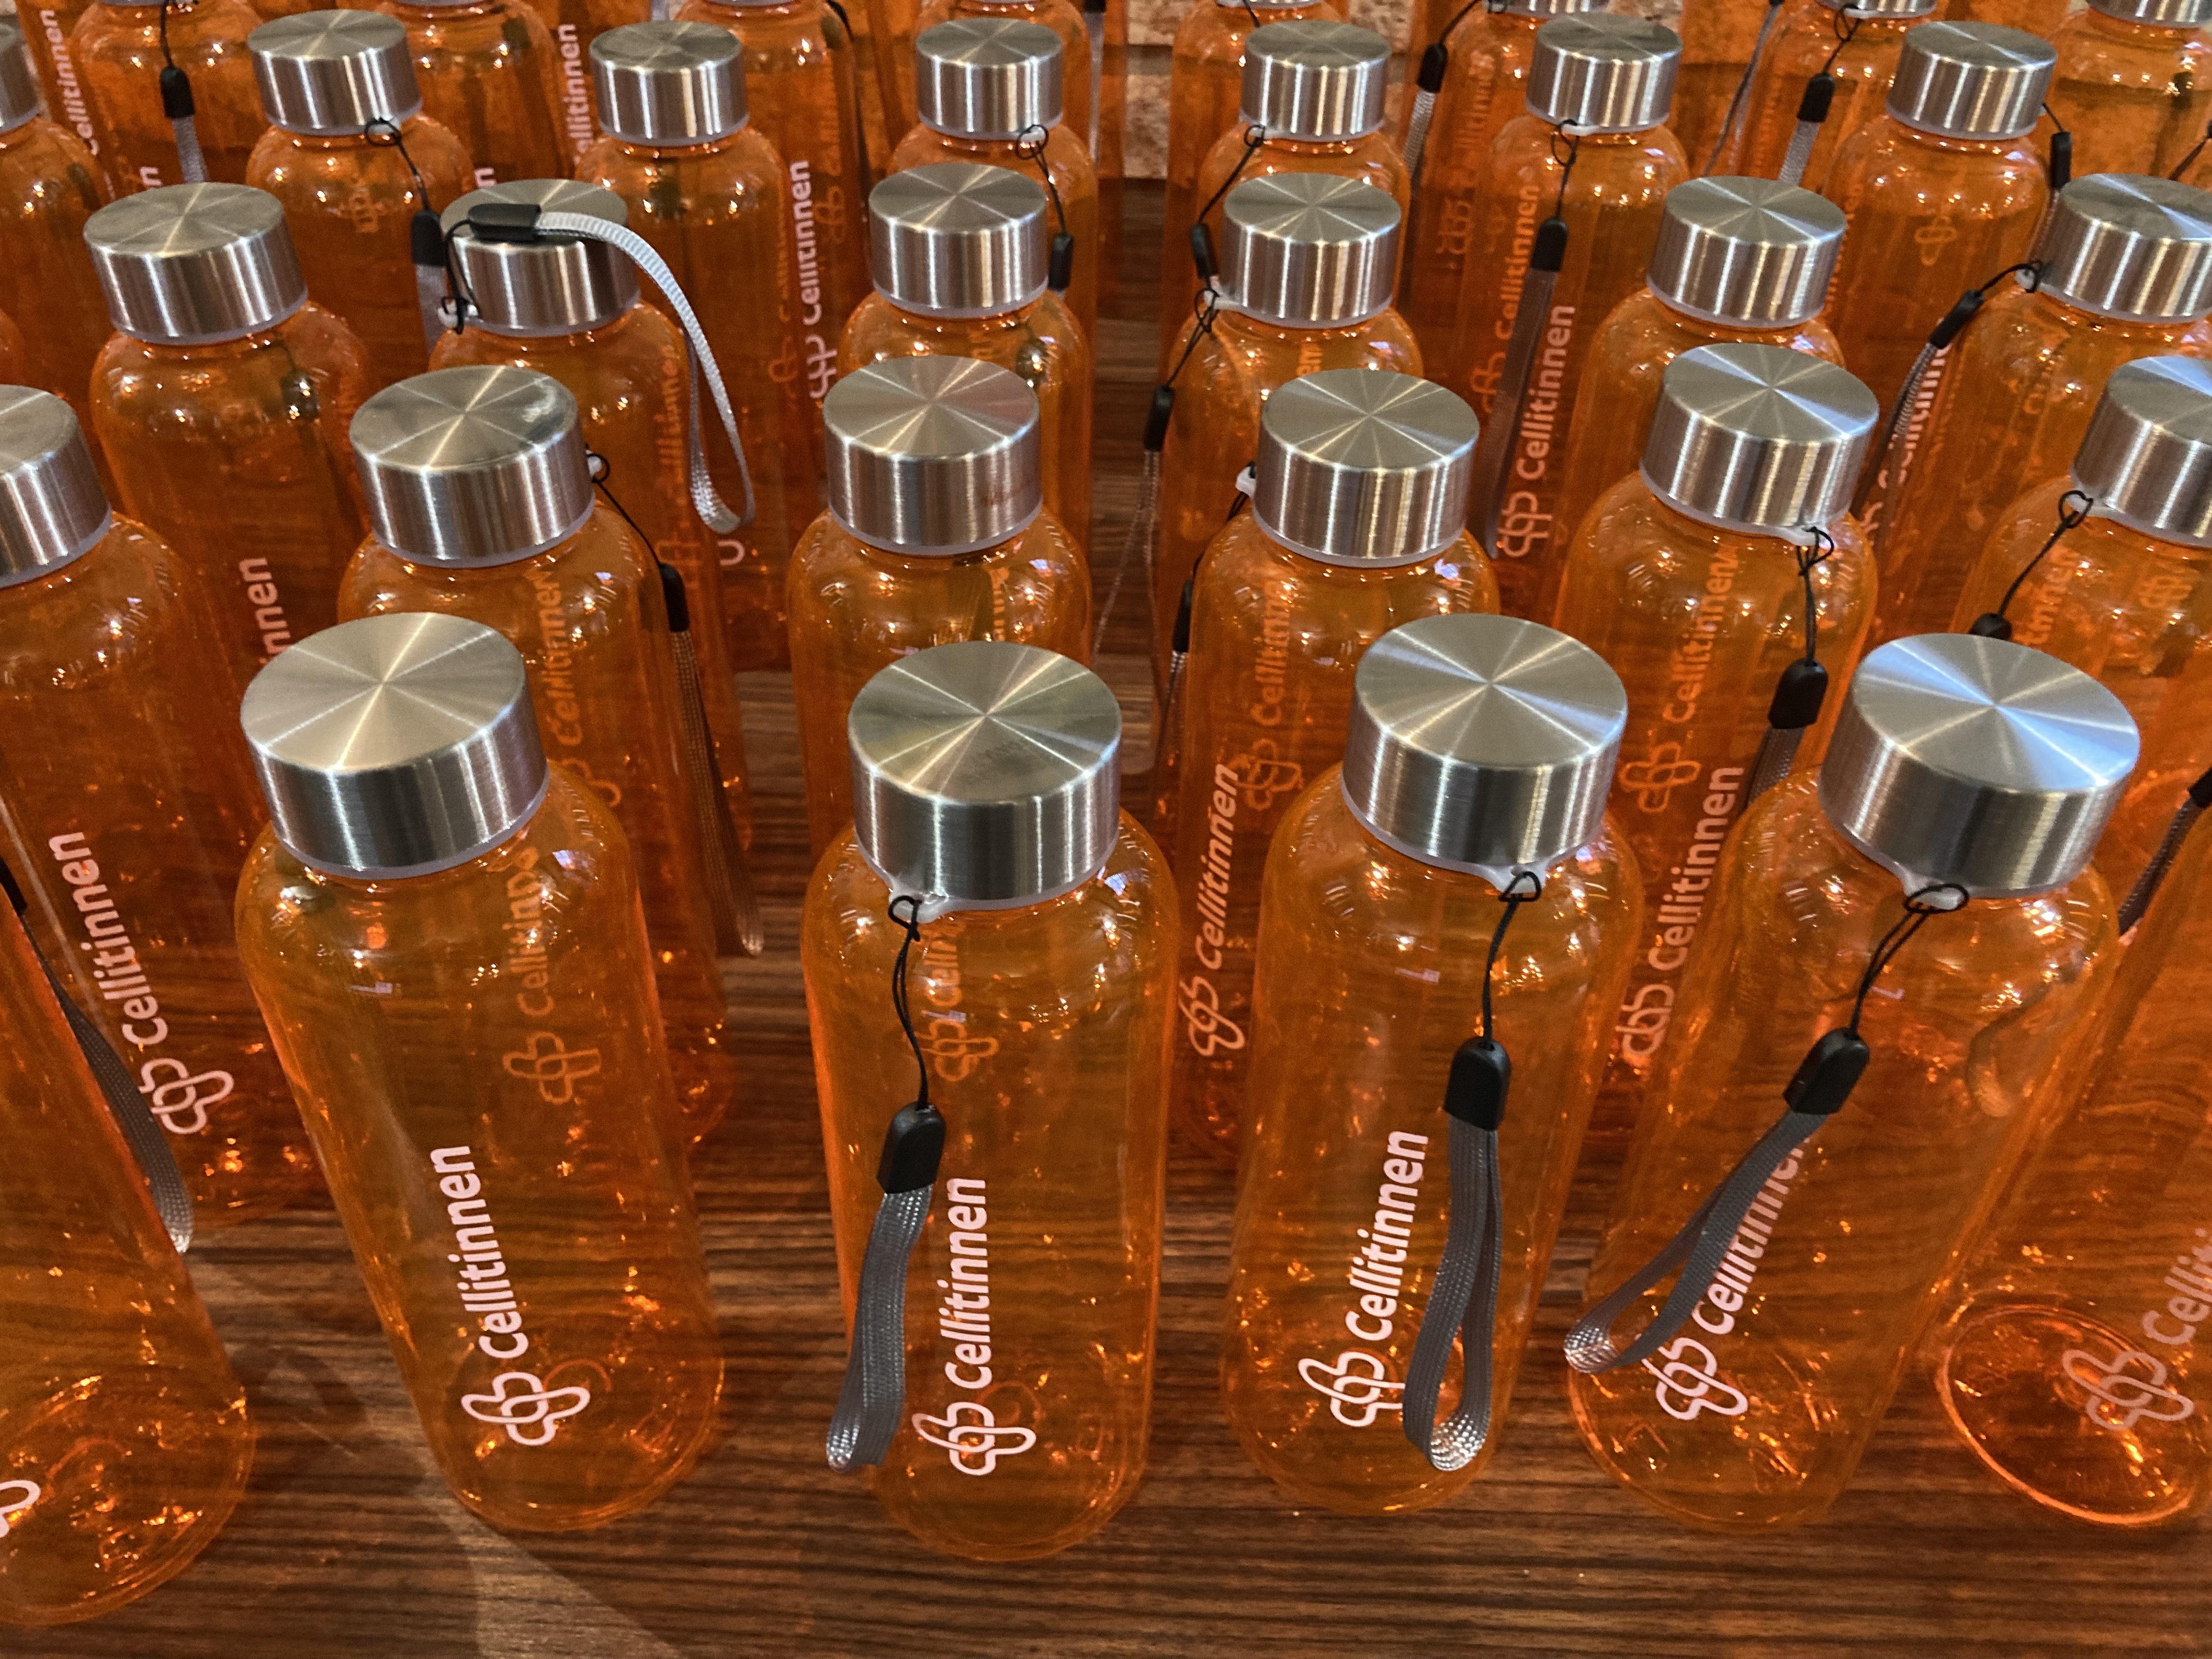 Als Give-Away erhielten alle Mitarbeitenden eine orangene Trinkflasche mit dem neuen Logo.